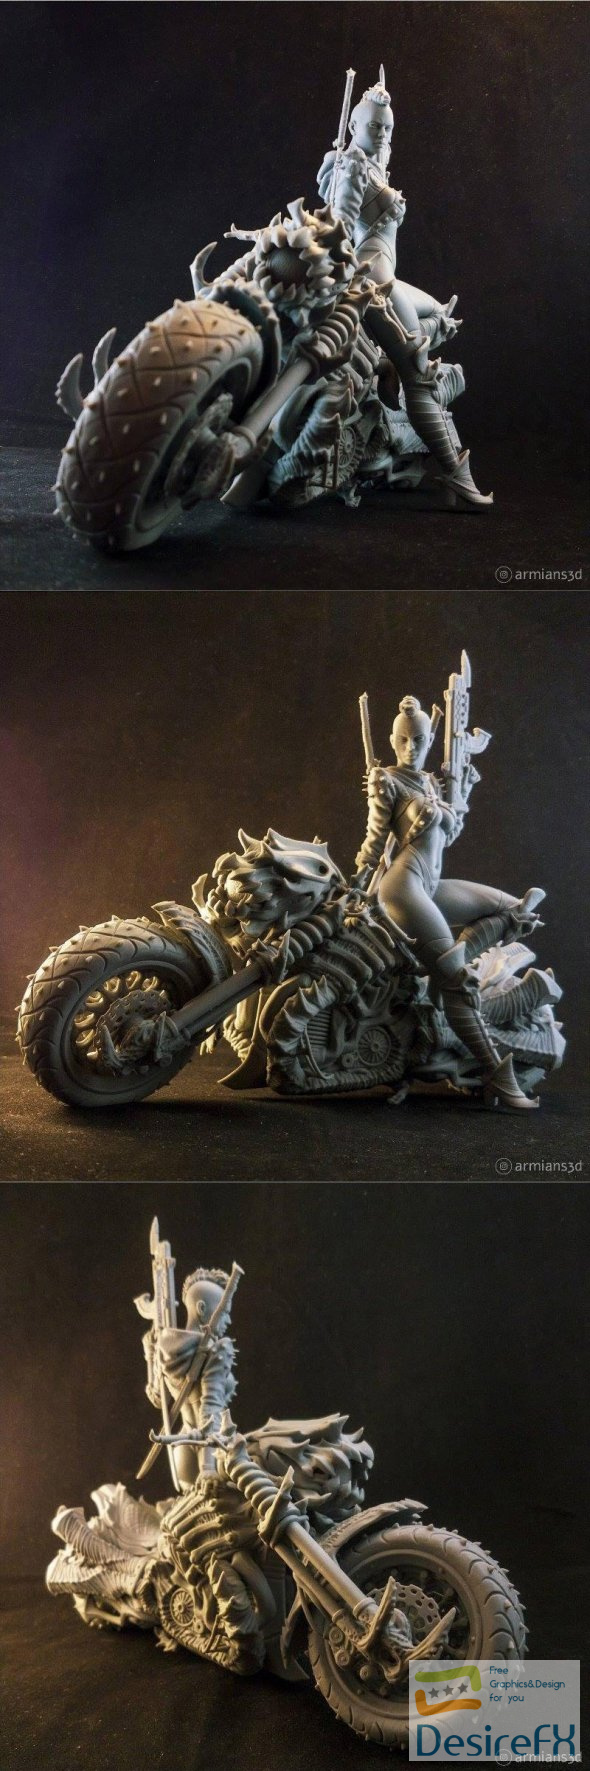 Cyber Metal Biker 3D Print